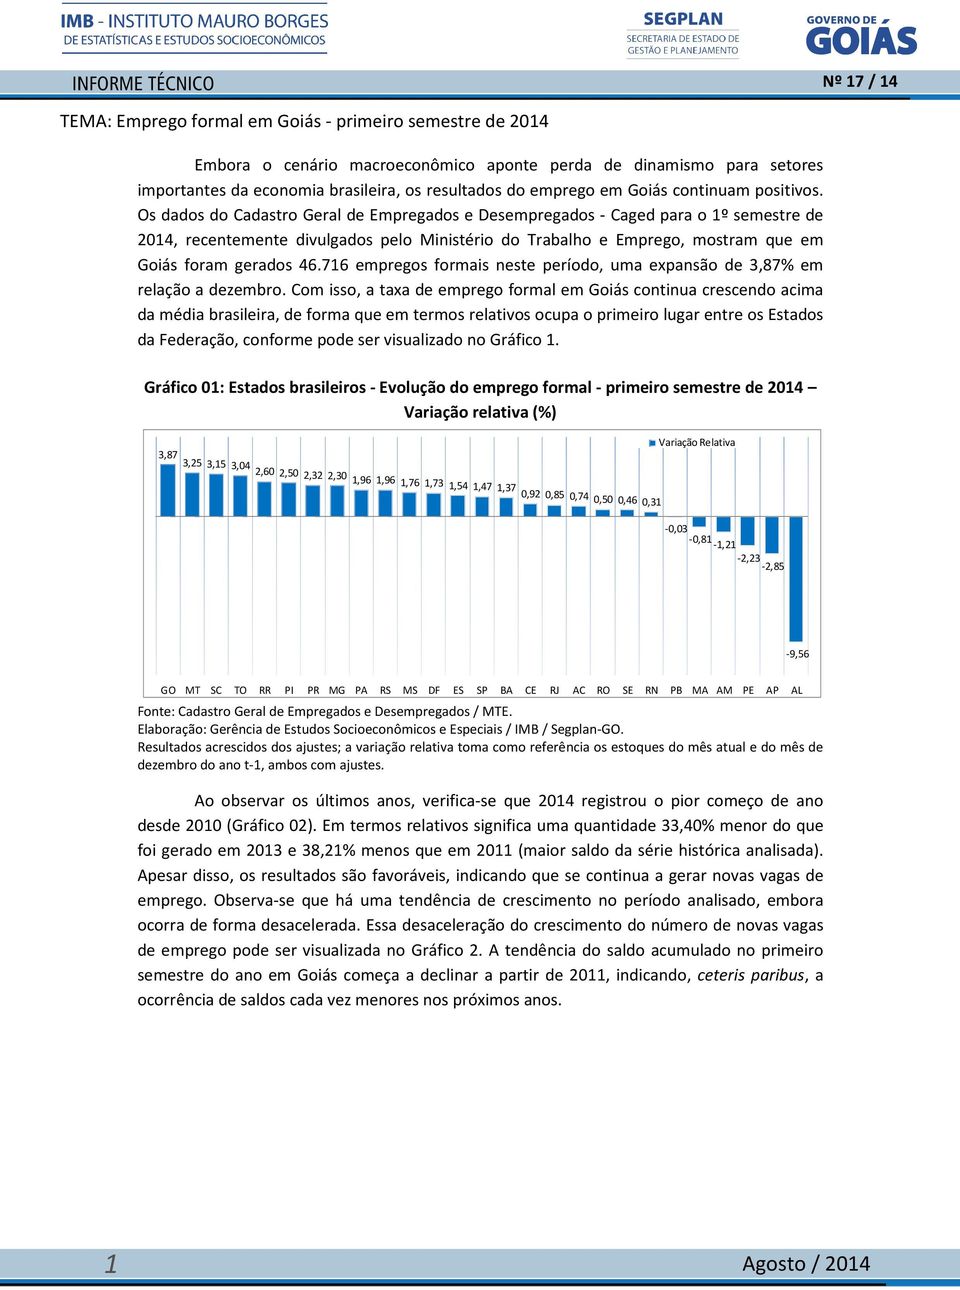 Os dados do Cadastro Geral de Empregados e Desempregados - Caged para o 1º semestre de 2014, recentemente divulgados pelo Ministério do Trabalho e Emprego, mostram que em Goiás foram gerados 46.